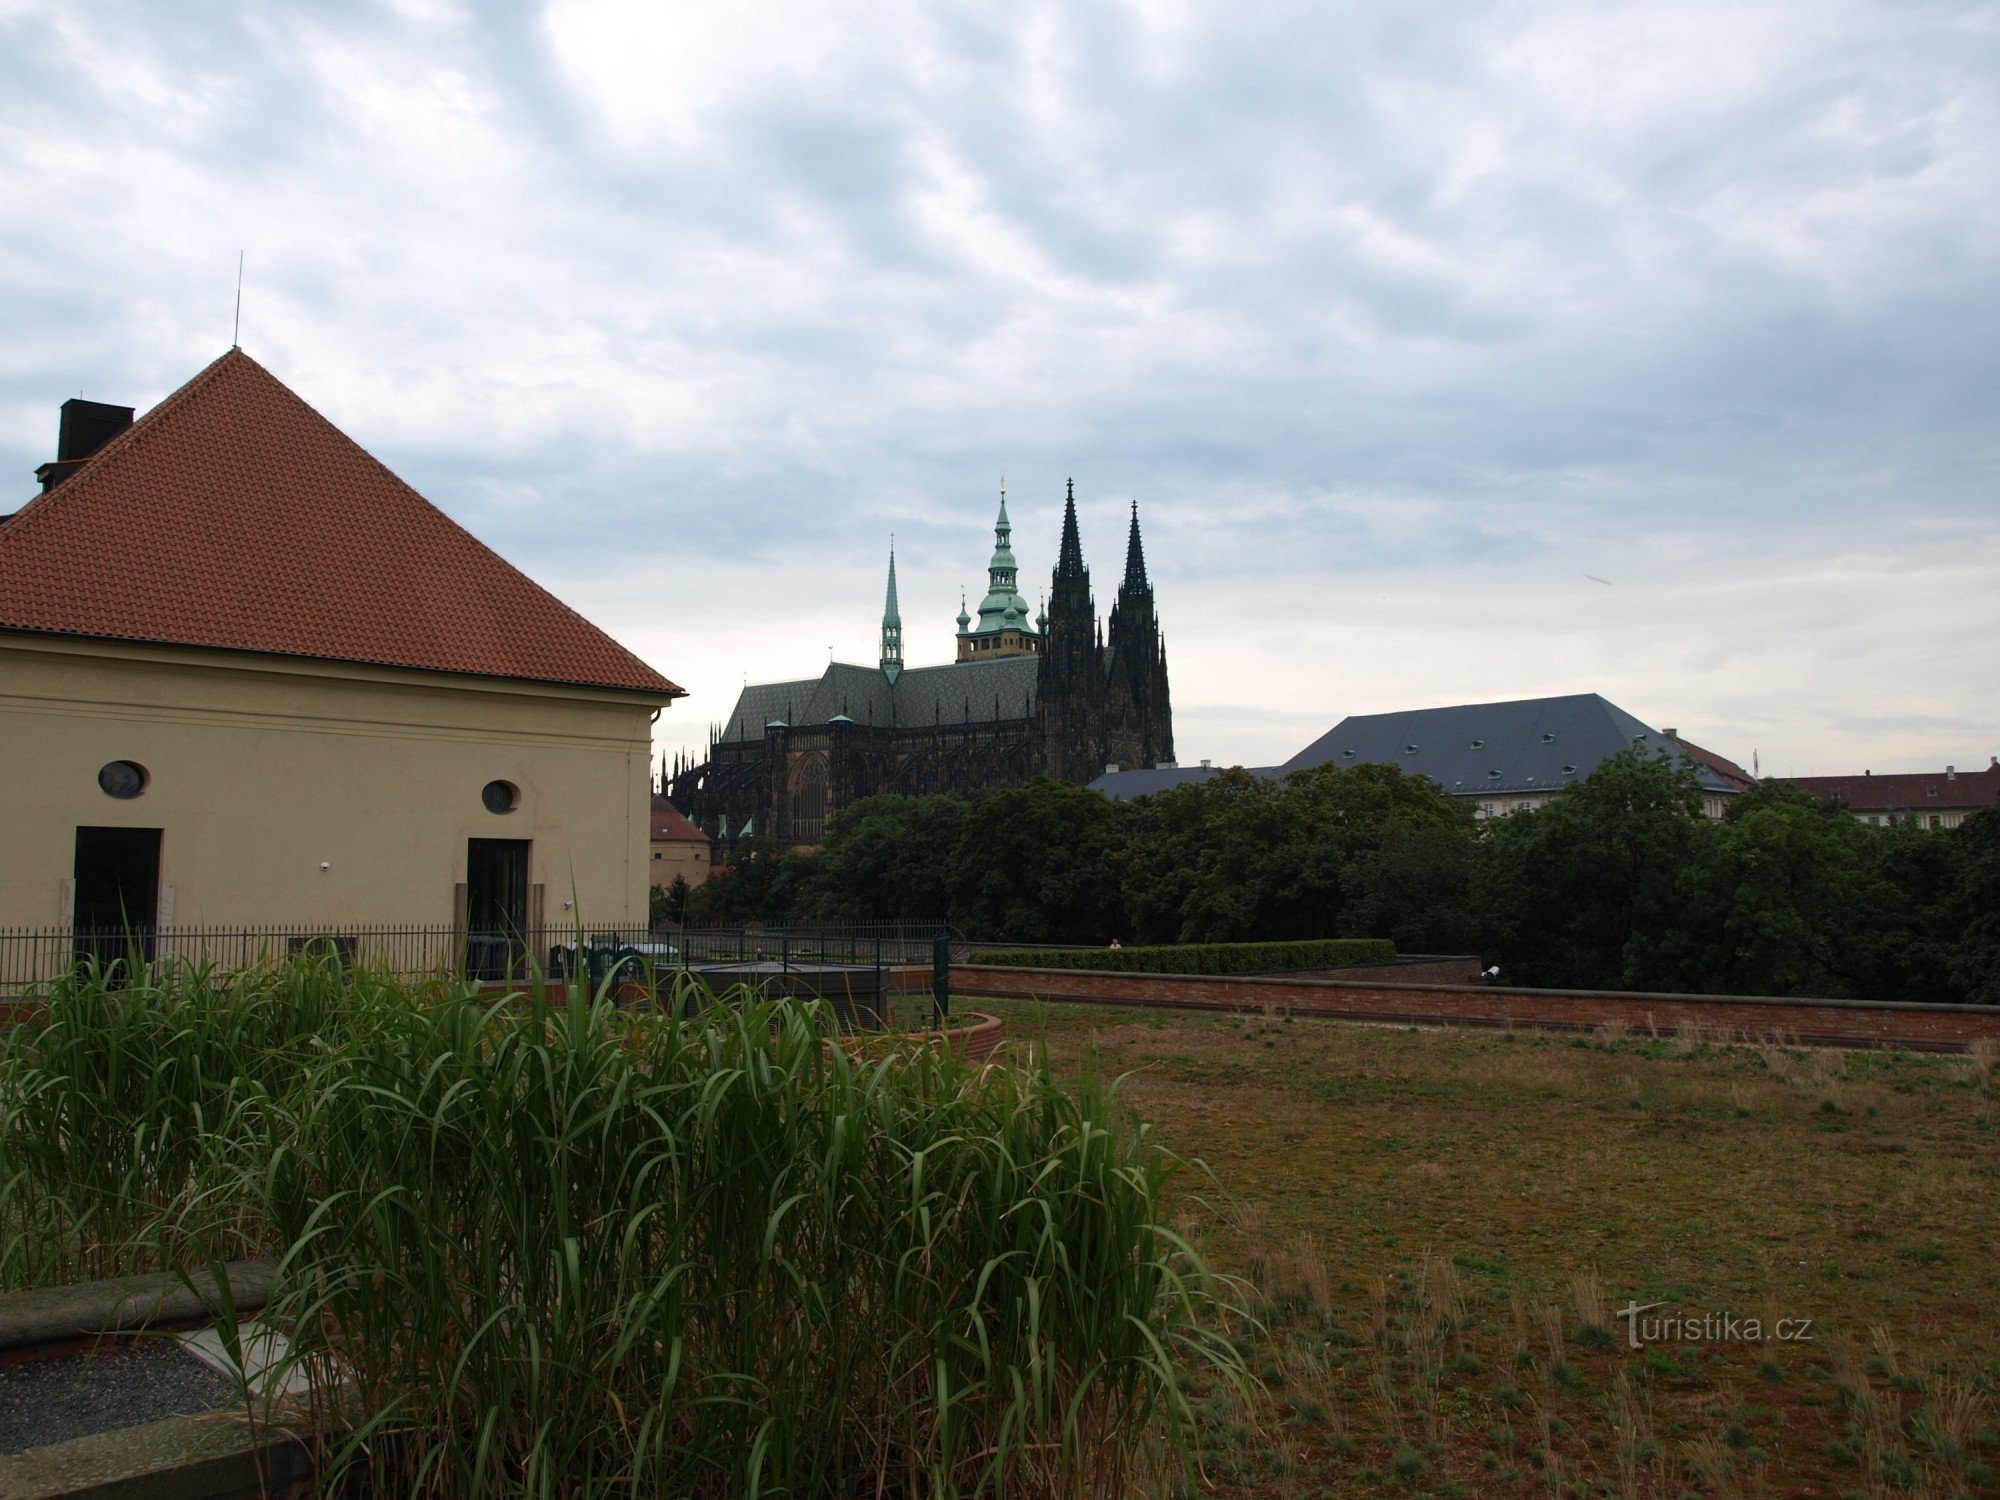 Khu vườn sản xuất của lâu đài Praha